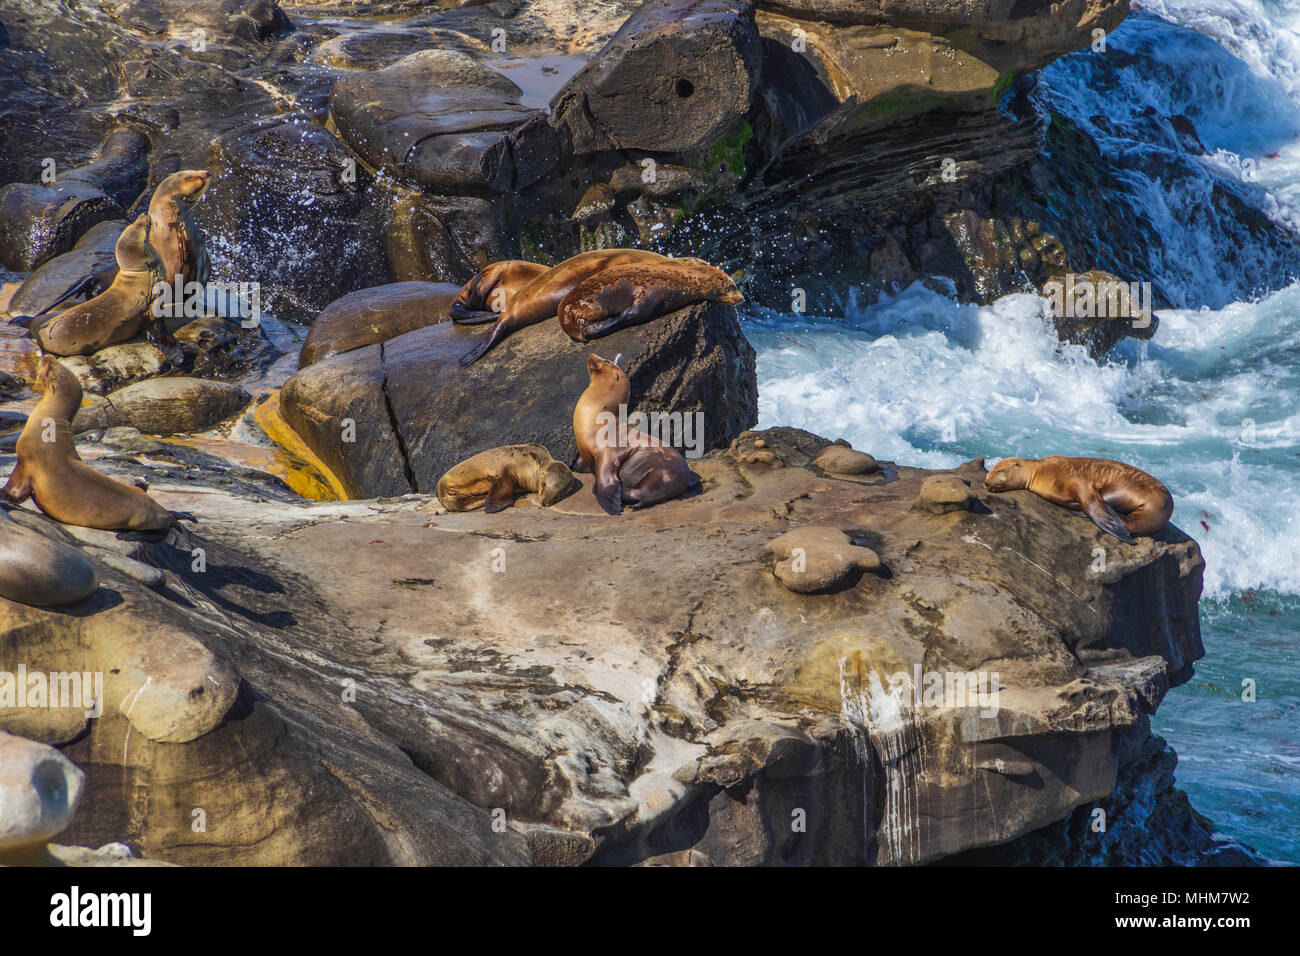 California i leoni di mare a La Jolla Cove, La Jolla, California. Foto Stock